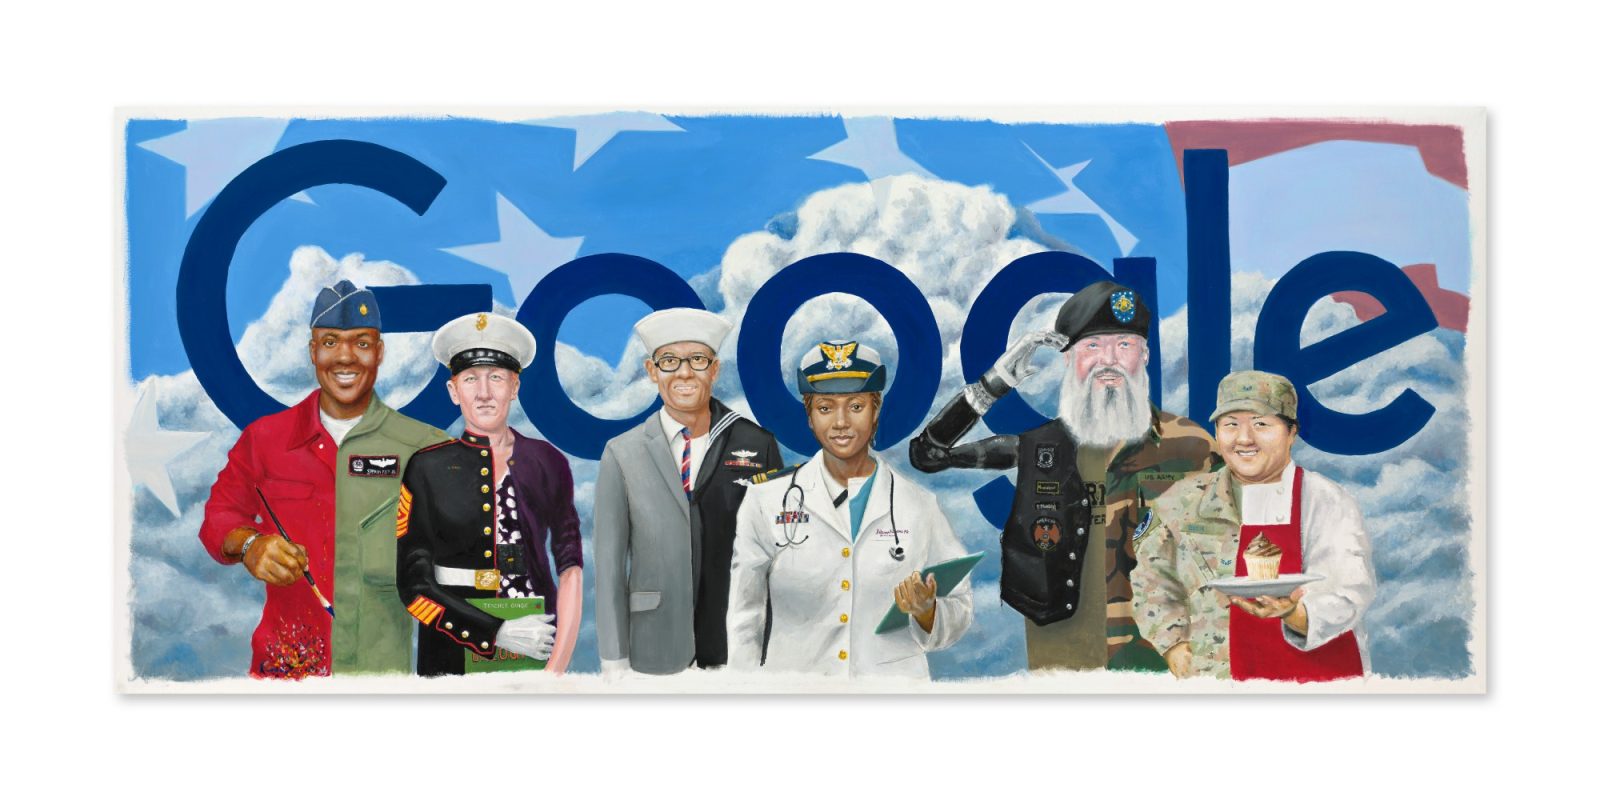 Veterans Day 2021 Google Doodle by Steven Tette